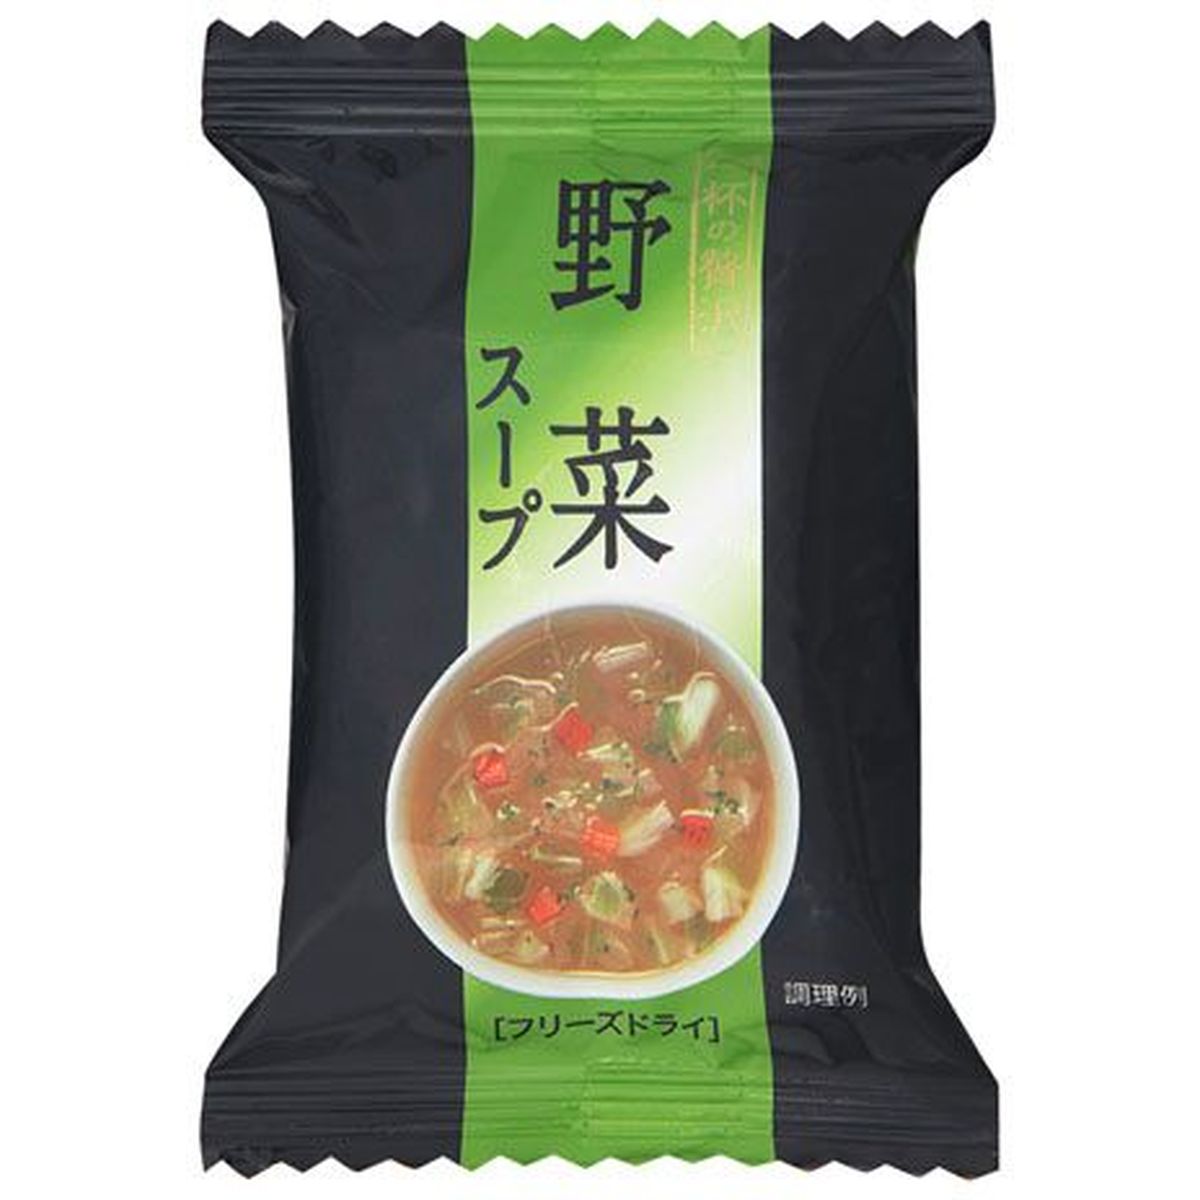 【10個入リ】キリン 一杯ノ贅沢 野菜スープ 6.5g